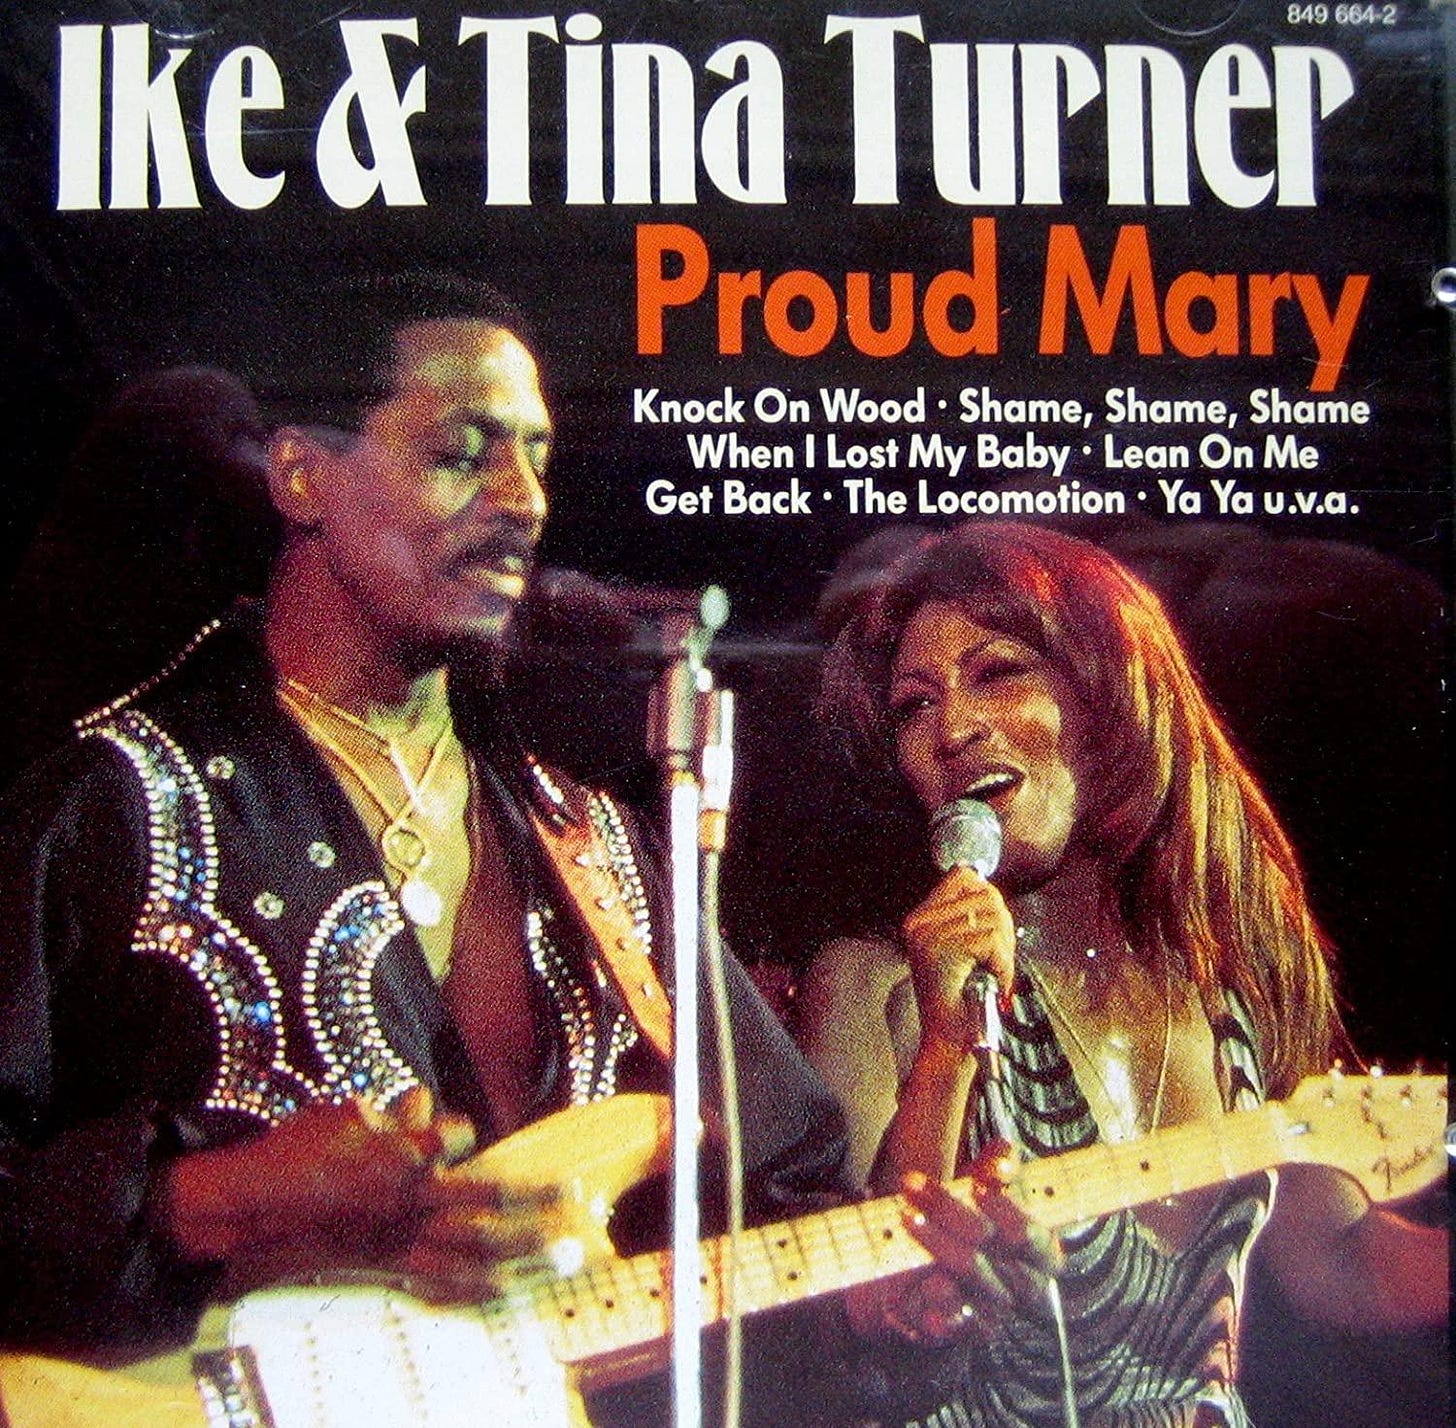 Filme İsmini Veren Tina Turner'ın Seslendirdiği "Proud Mary" Şarkısı ...